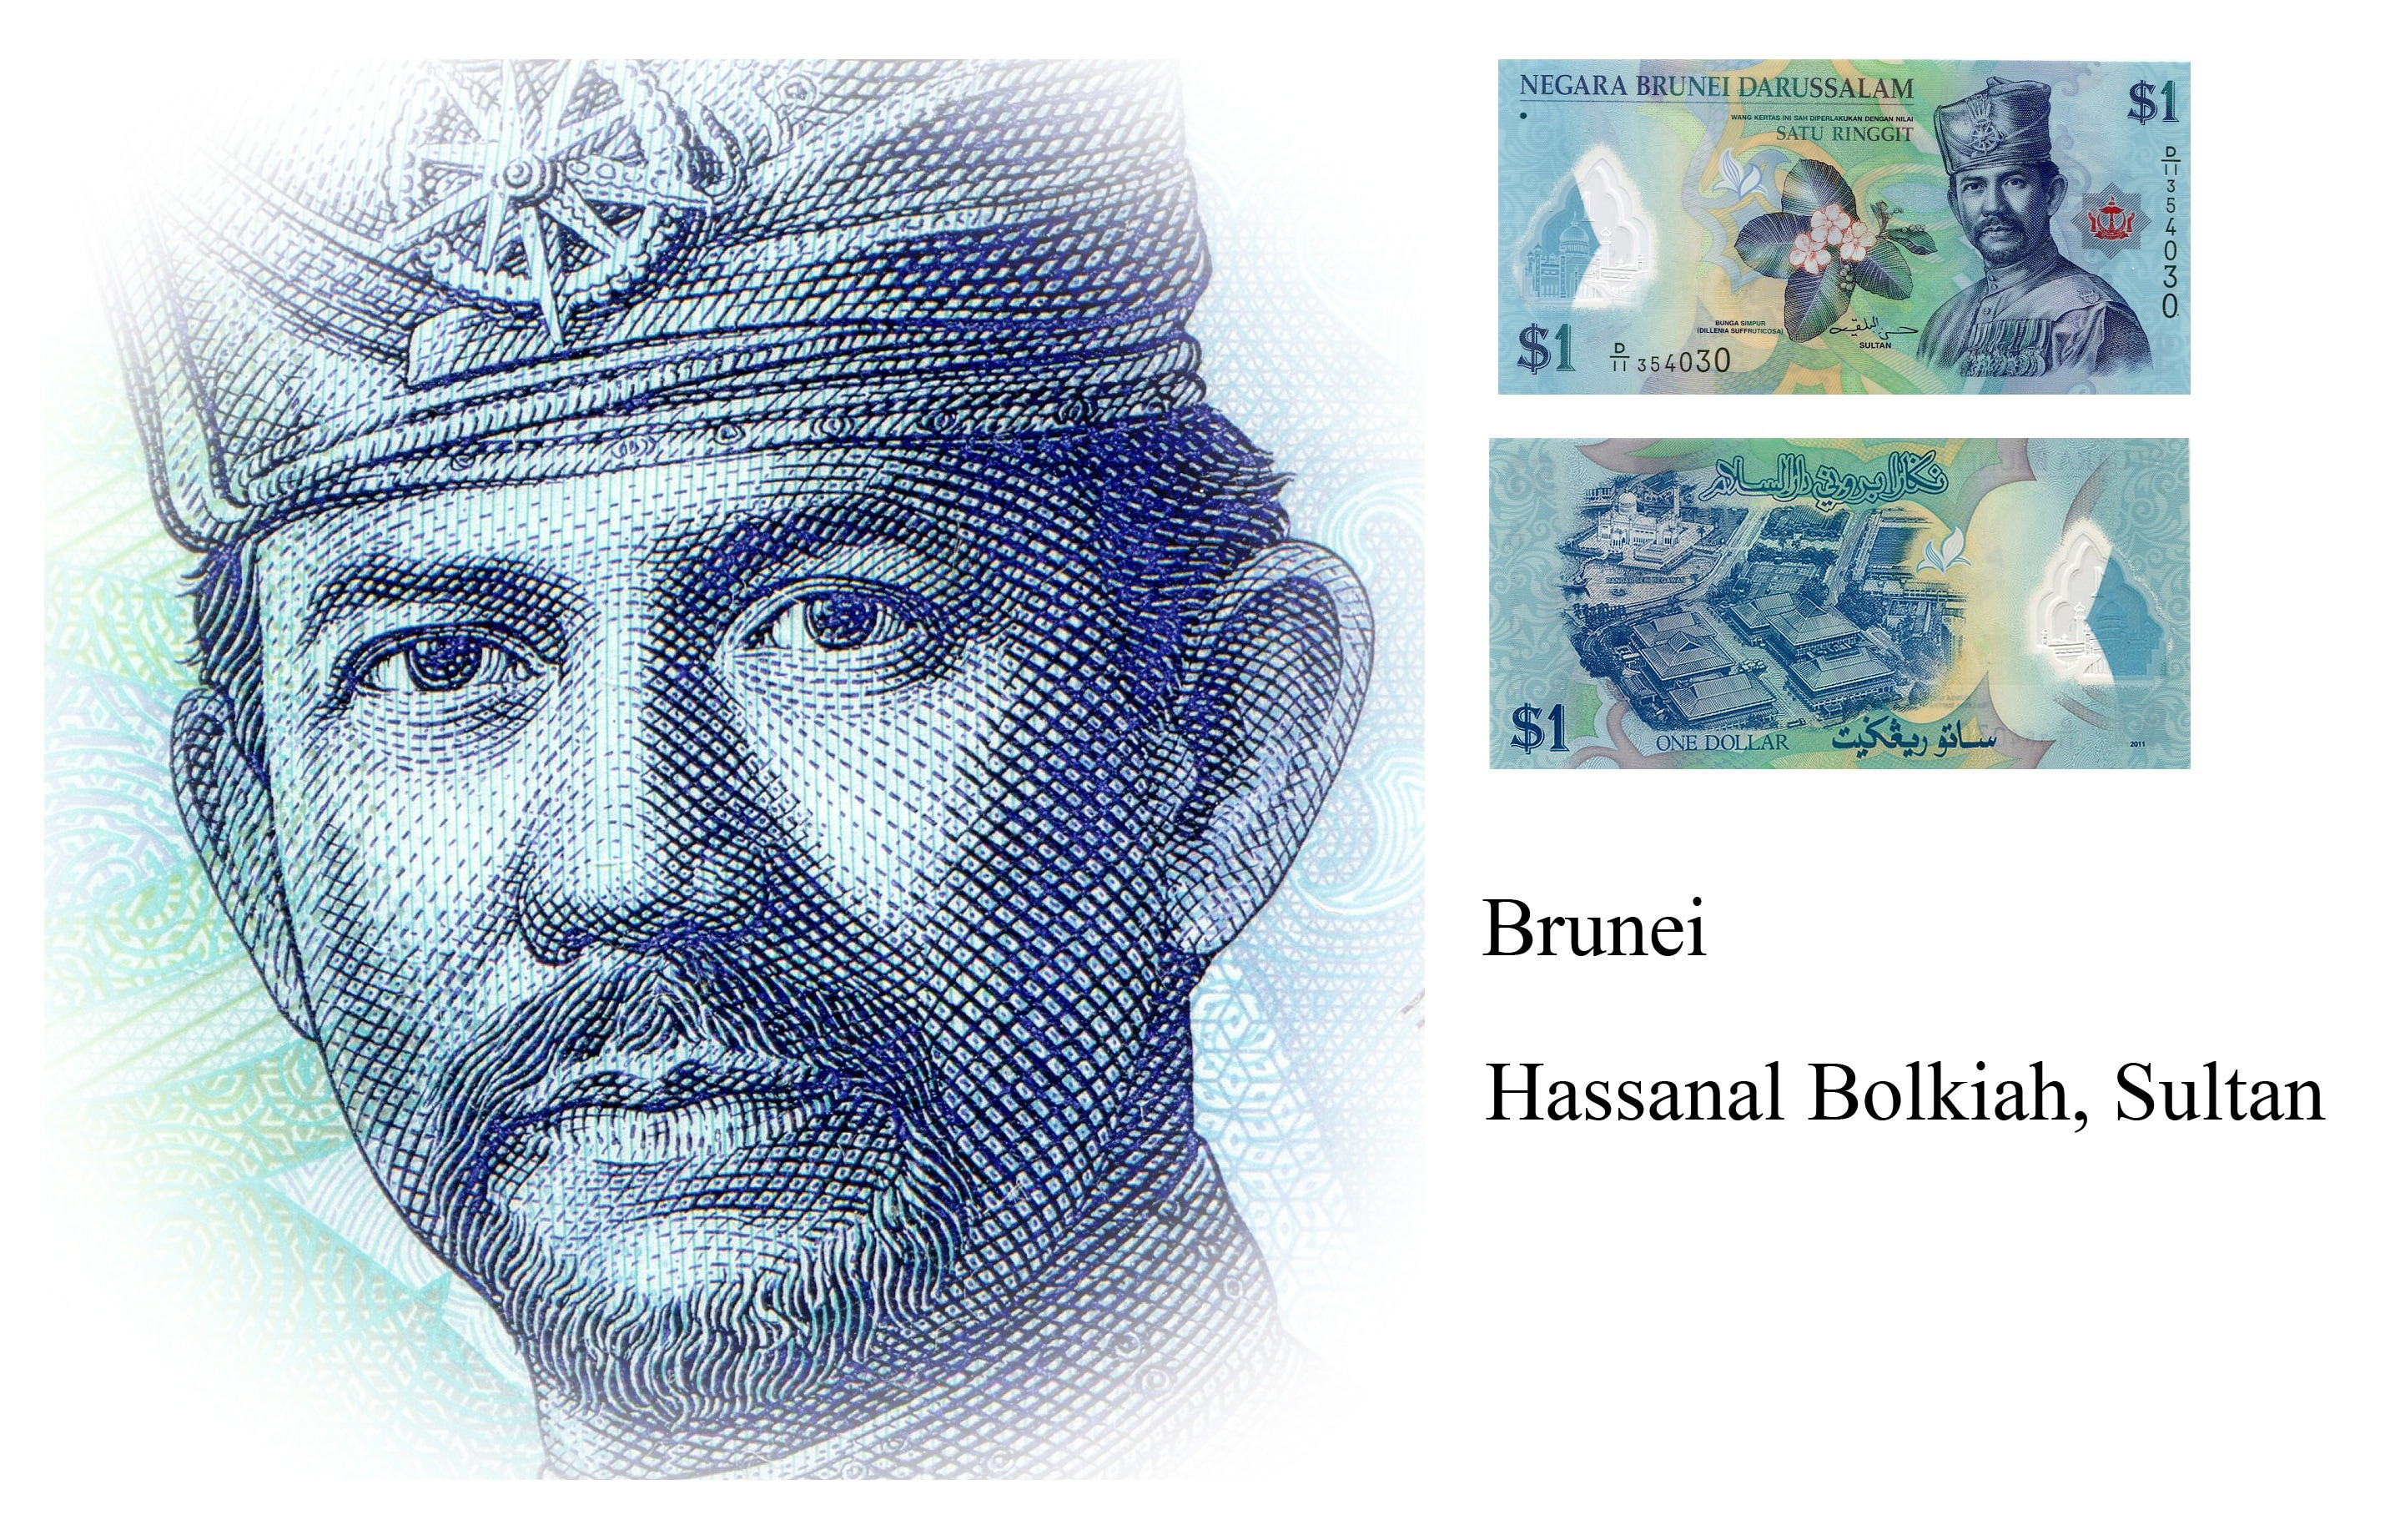 Brunei Hassanal Bolkiah, Sultan - Cash , HD Wallpaper & Backgrounds